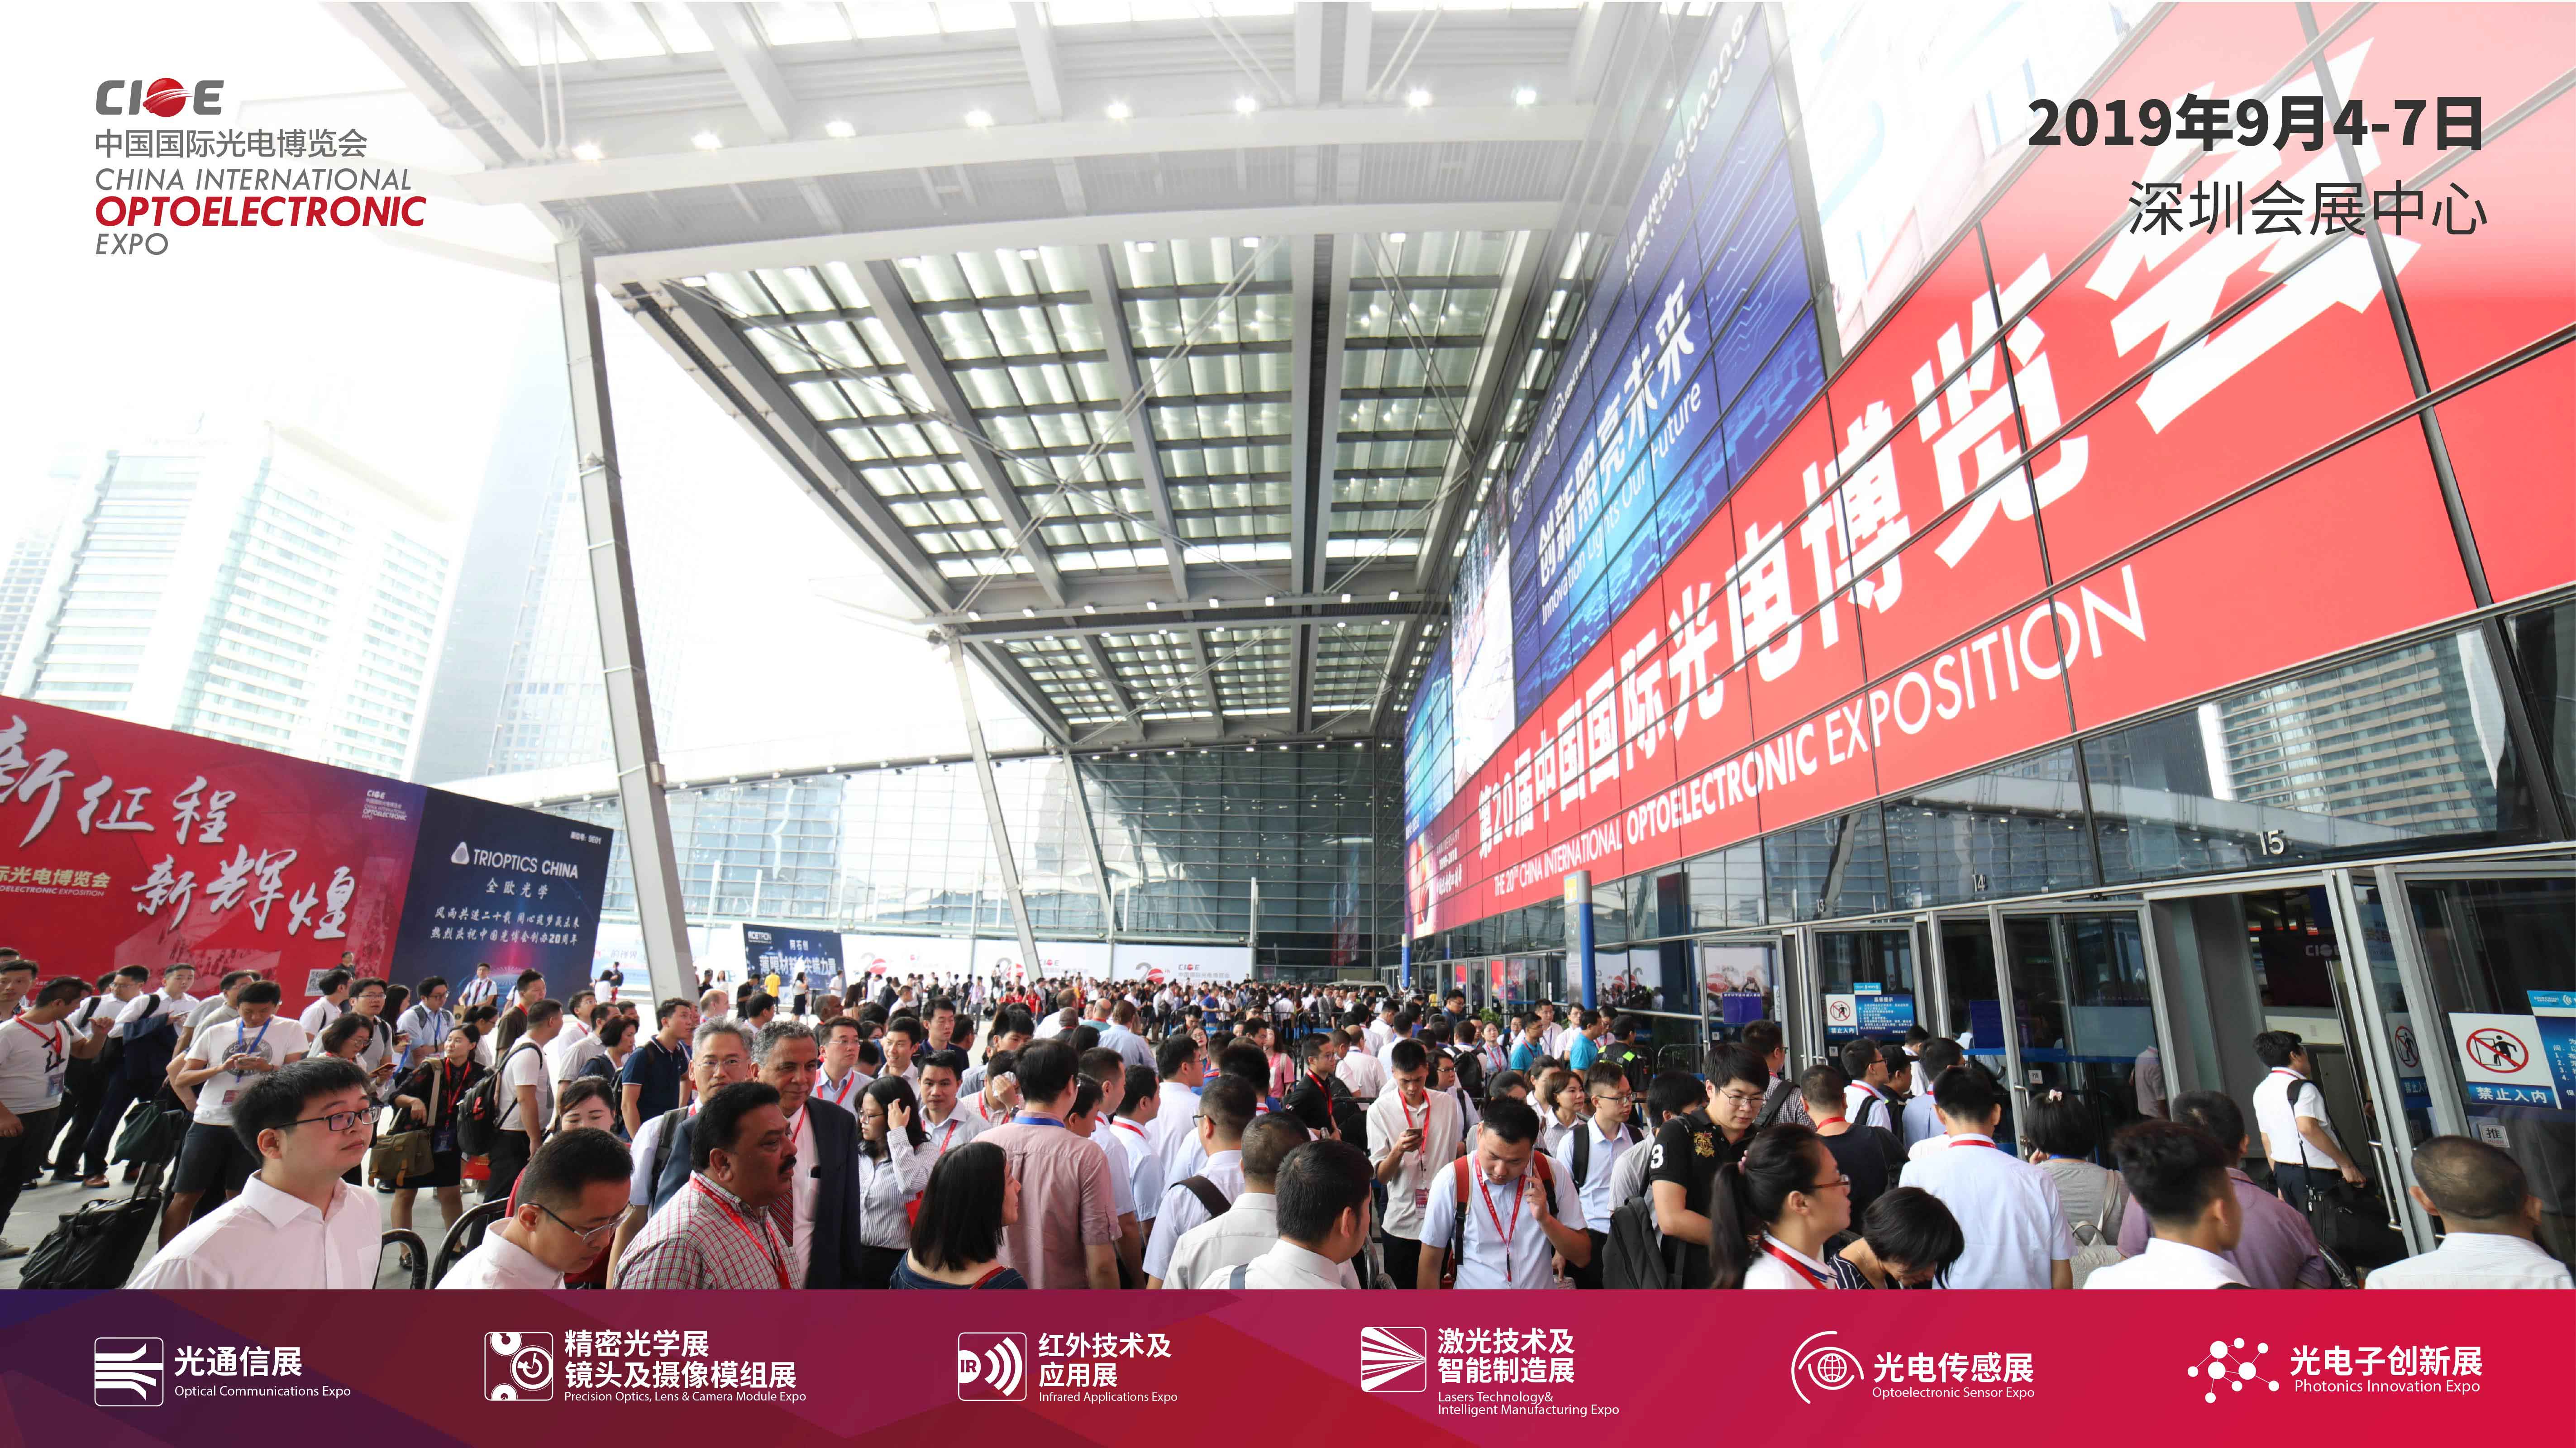 佰为深科技即将亮相cioe中国光博会，与70,000名行业人士共襄光电盛宴